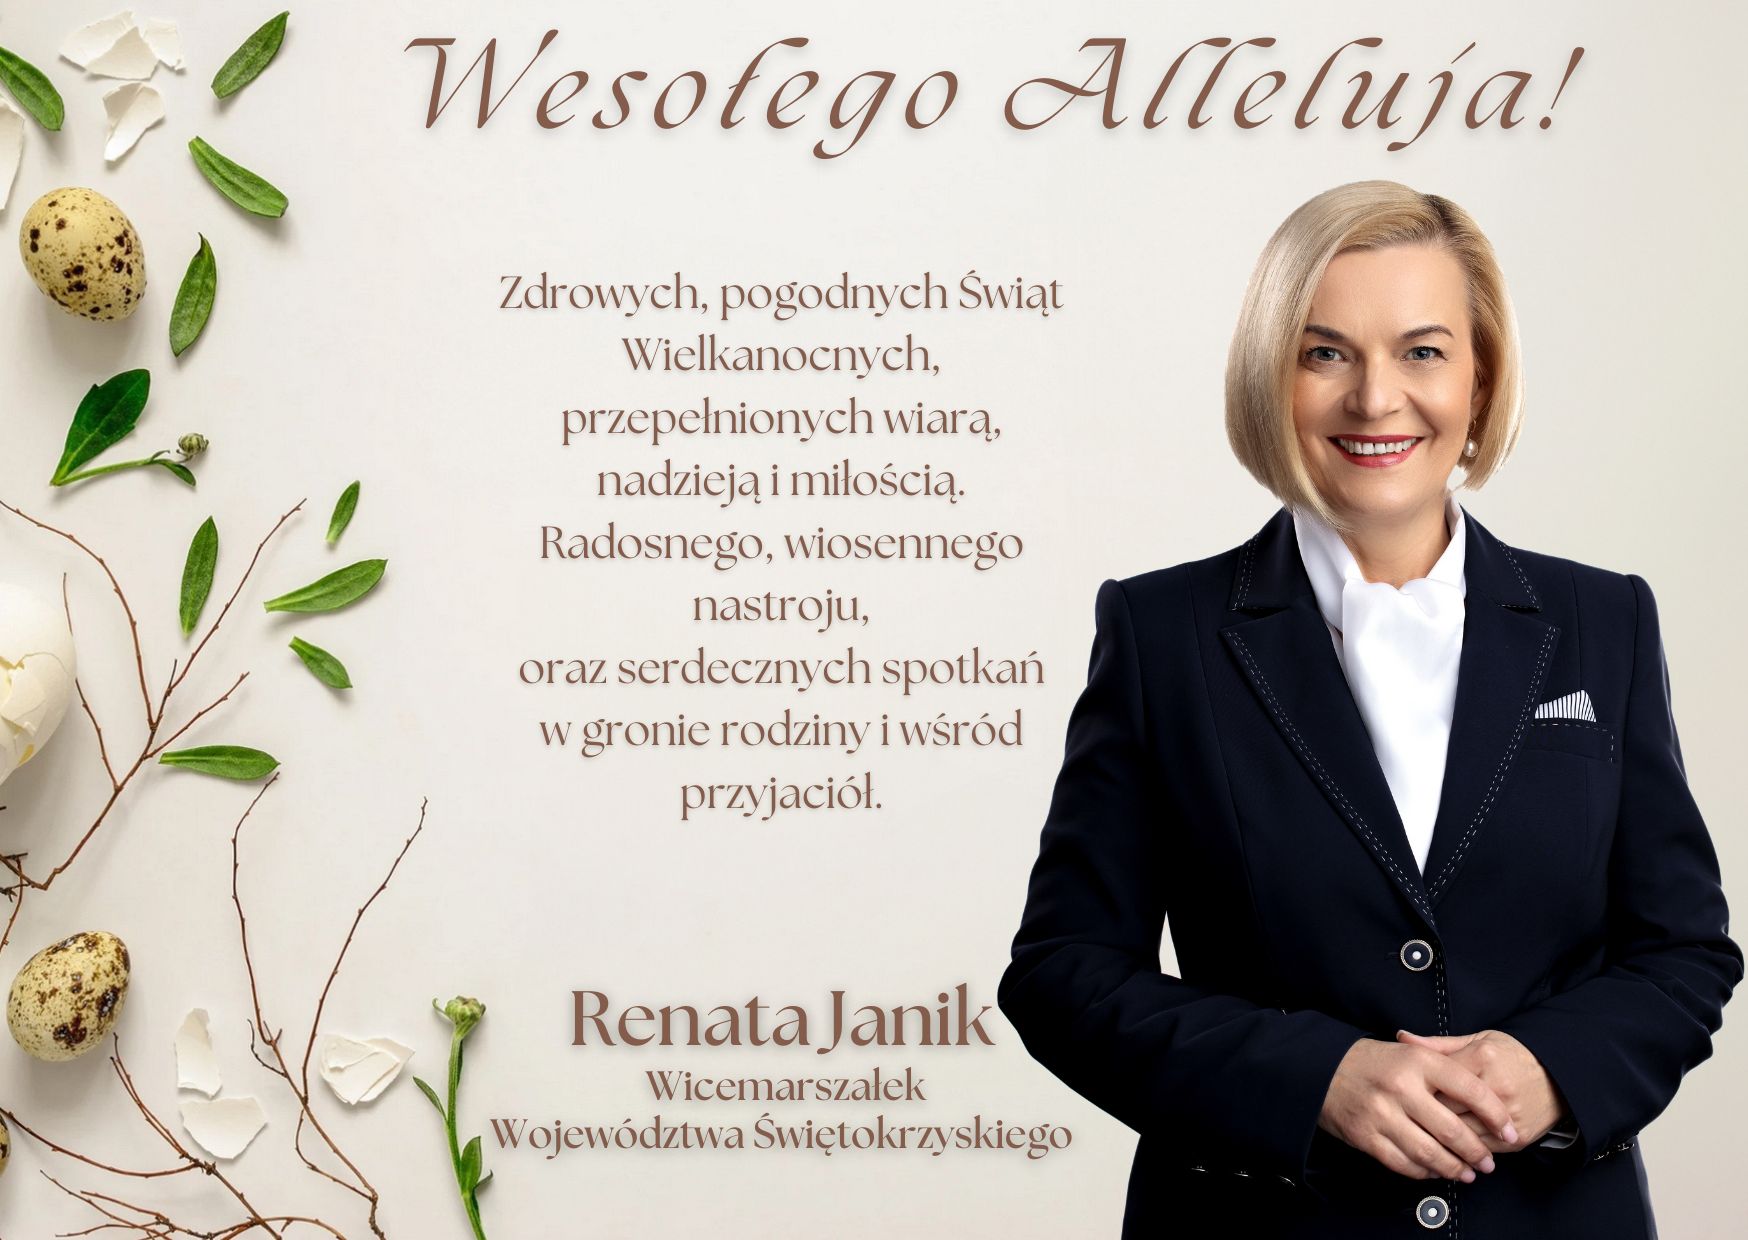 Życzenia Świąteczne od Wicemarszałek Województwa Świętokrzyskiego Renaty Janik